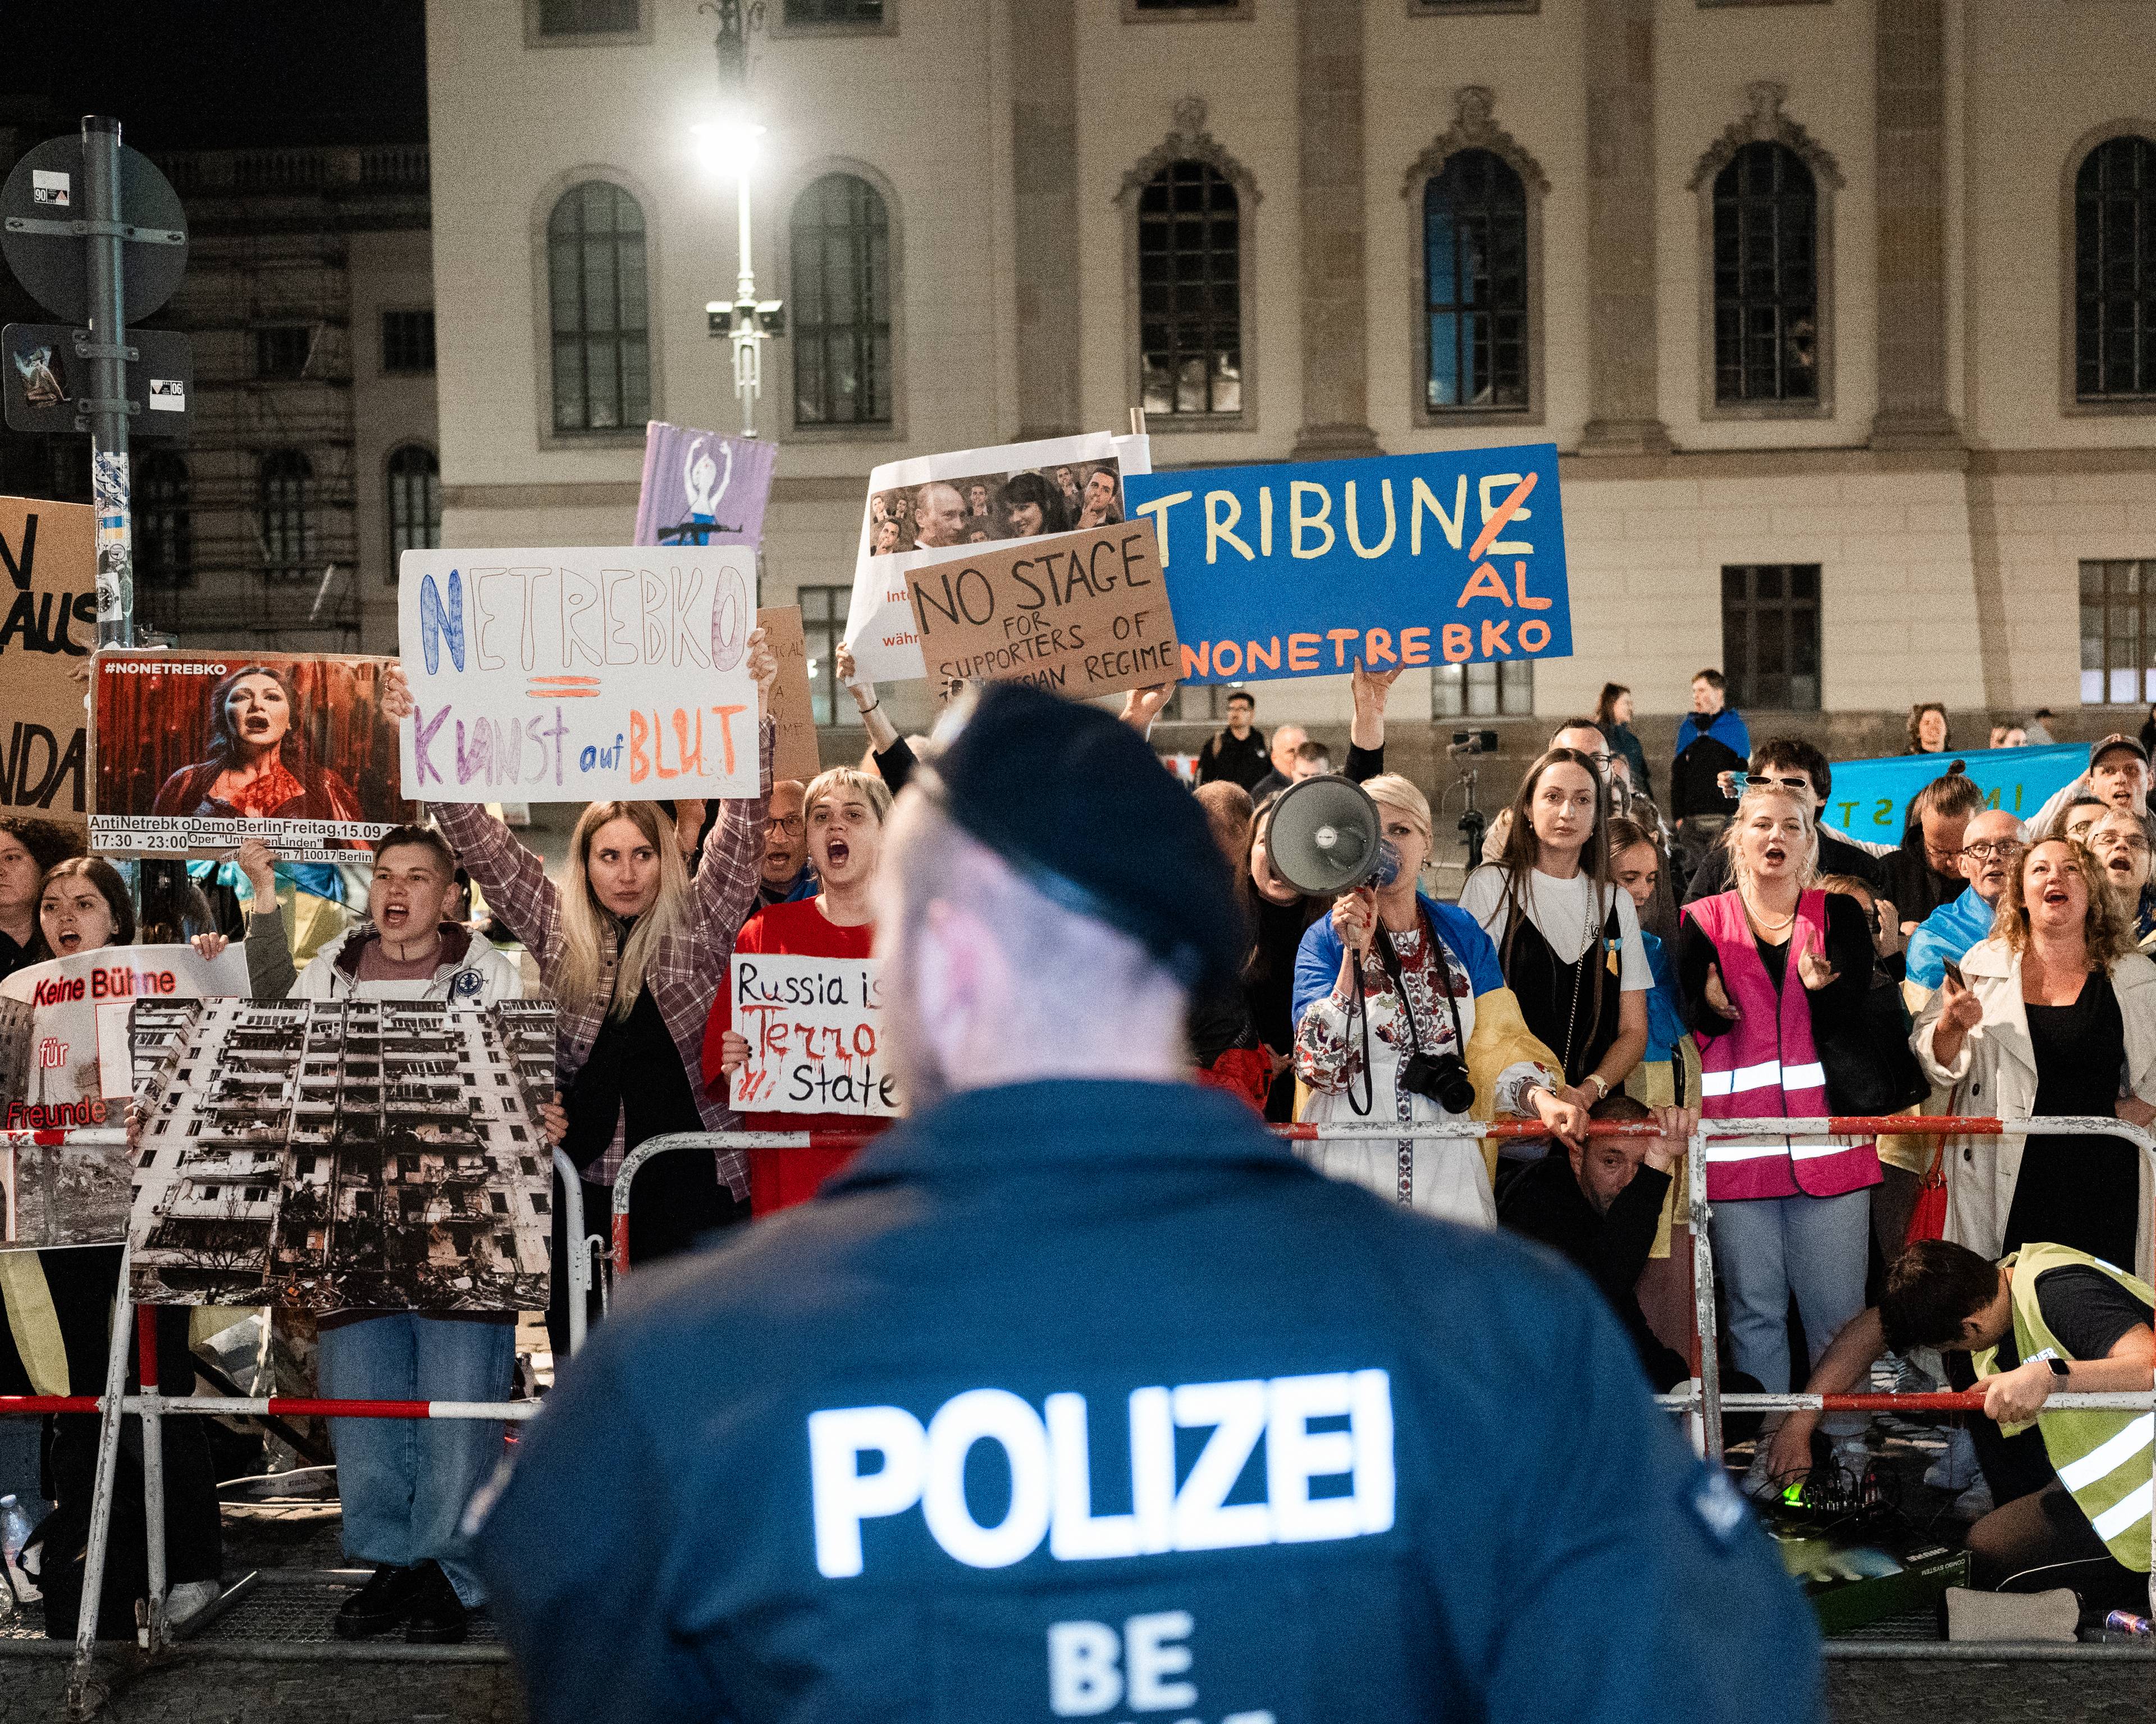 zdjęcie z protestu ulicznego, na pierwszym planie plecy niemieckiego policjanta